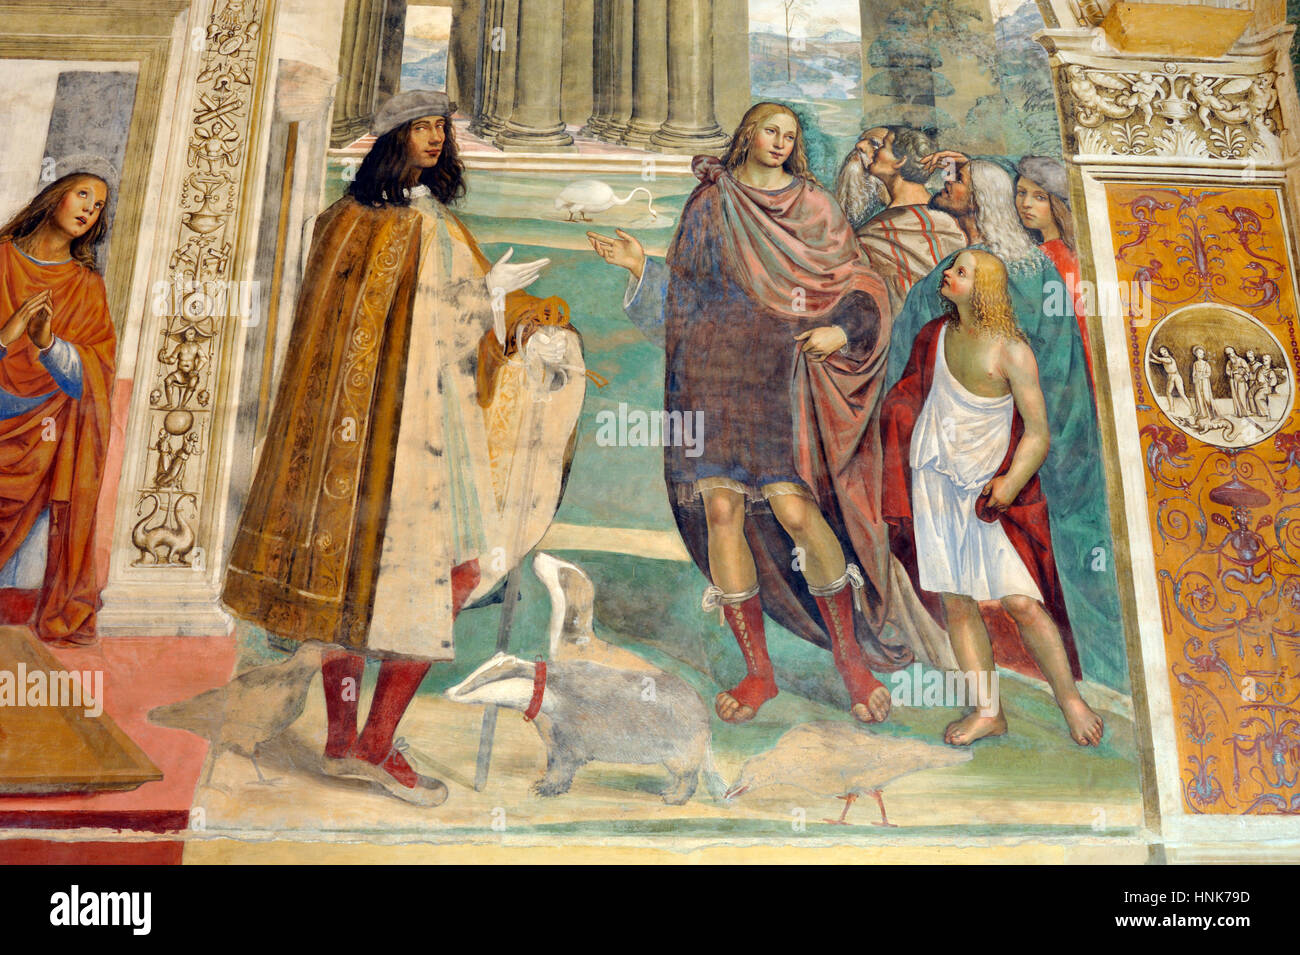 Renaissance-Fresken, St. Benedict Leben, Gemälde von Il Sodoma, Chiostro Grande (großes Kloster), Abtei von Monte Oliveto Maggiore, Toskana, Italien Stockfoto